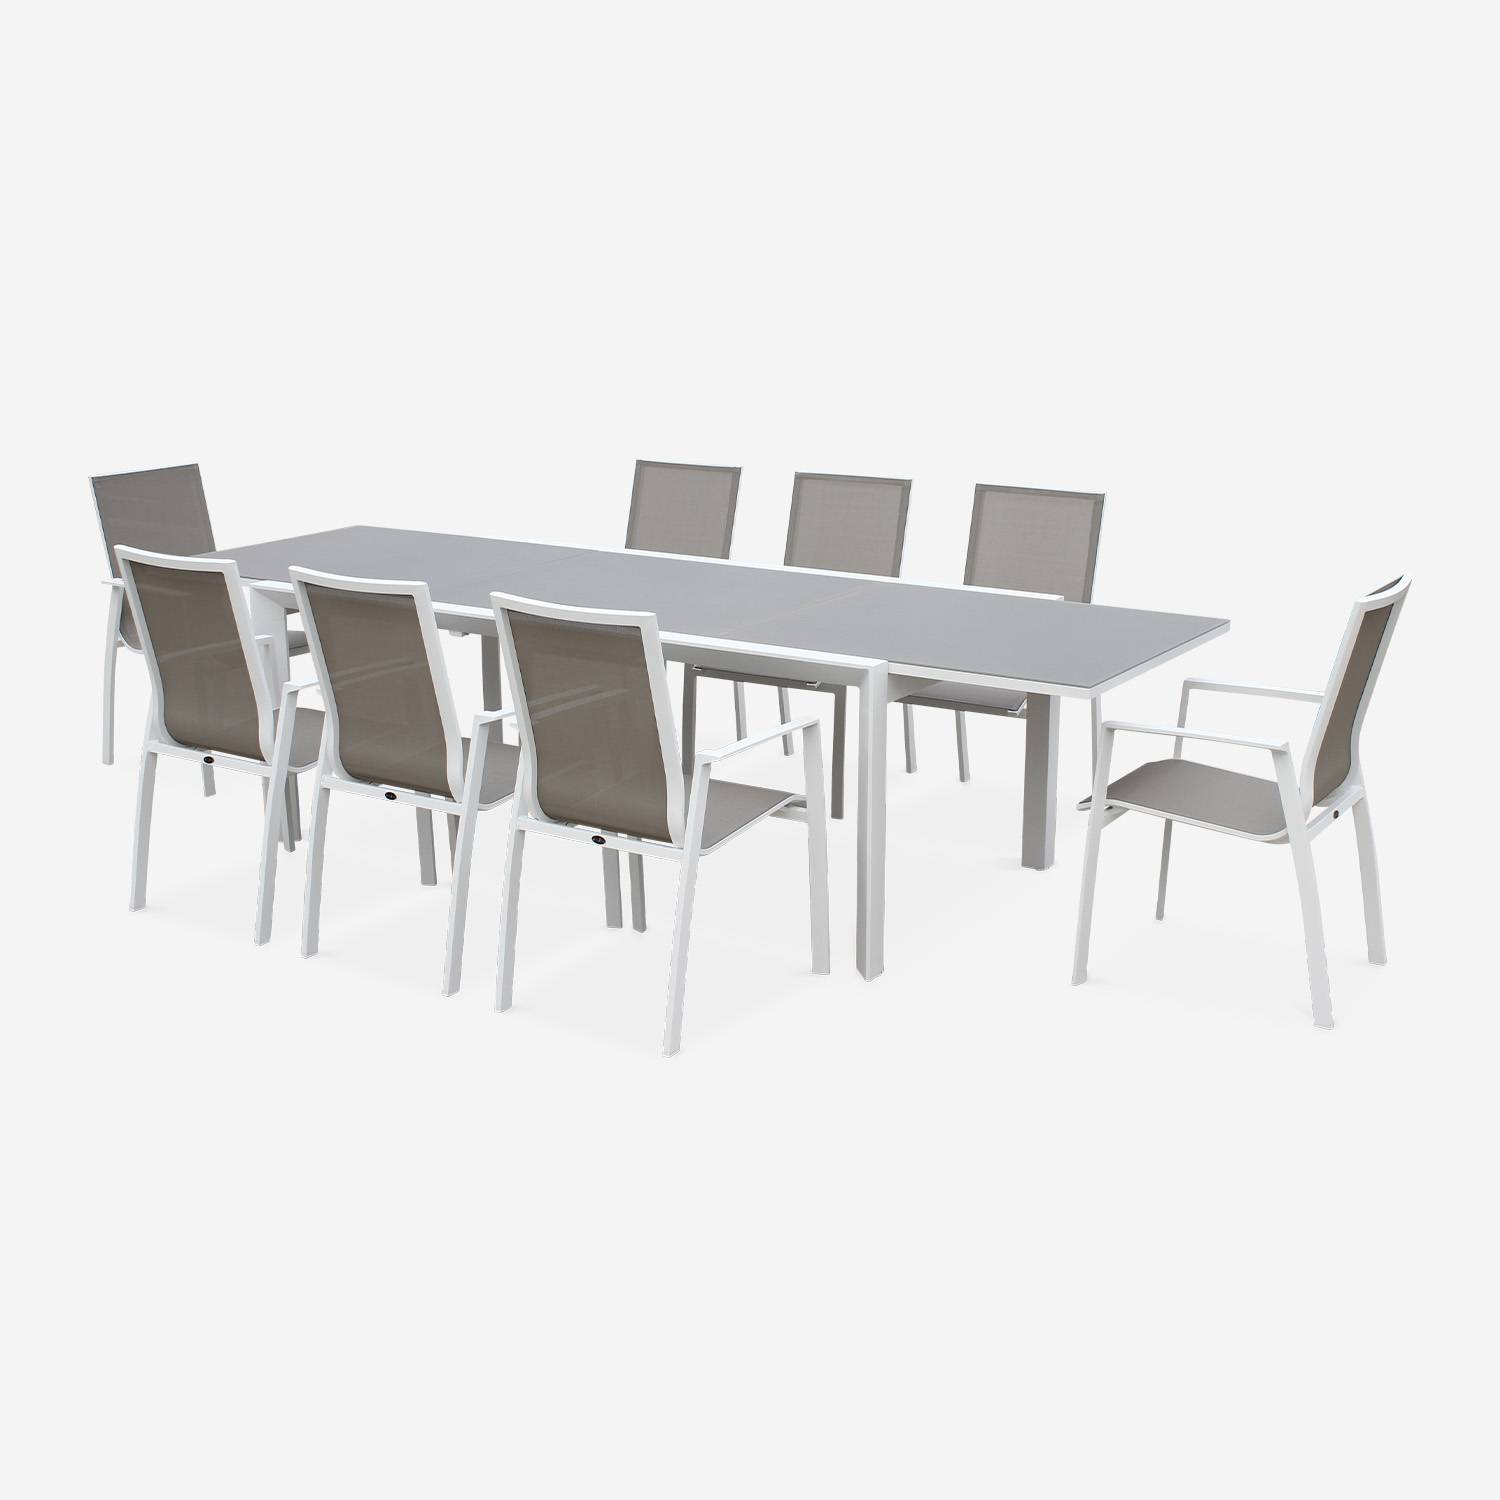 Tavolo da giardino con tavolo allungabile - modello: Washington, colore: Talpa - Tavolo in alluminio, dimensioni: 200/300cm, ripiano in vetro smerigliato, prolunga e 8 poltrone in textilene,sweeek,Photo2